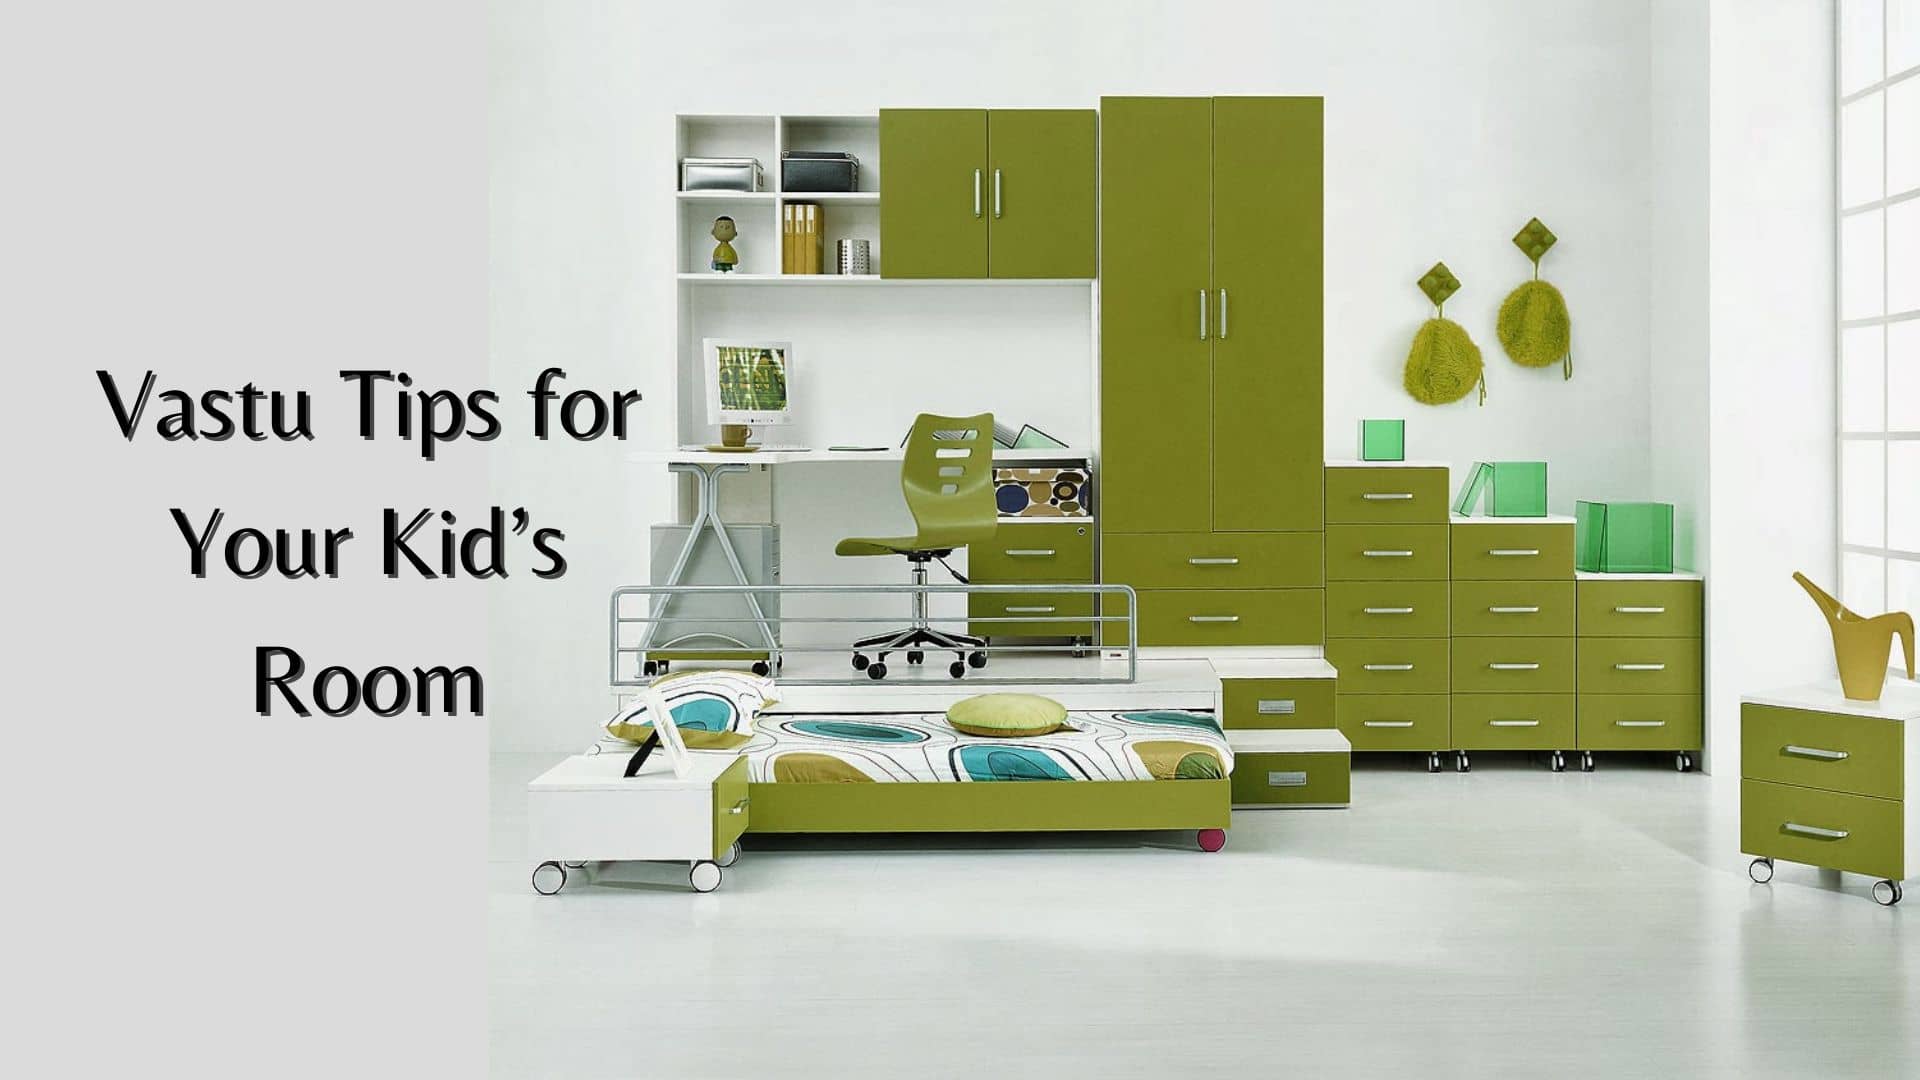 Vastu Tips for Your Kid’s Room